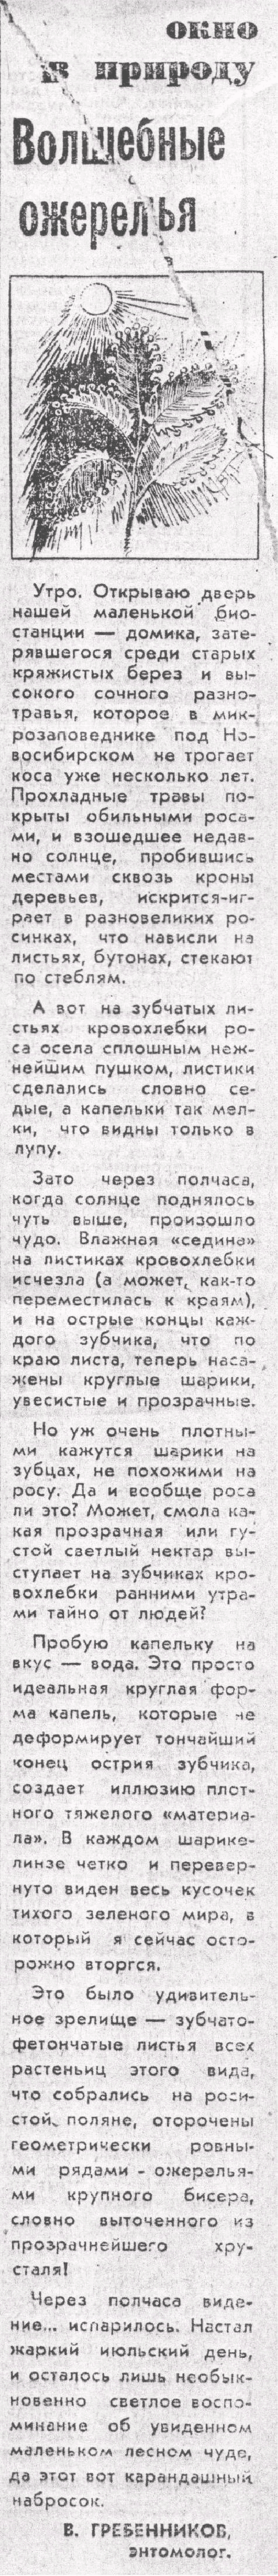 Волшебные ожерелья. В.С. Гребенников. Вечерний Новосибирск, 18.07.1980.